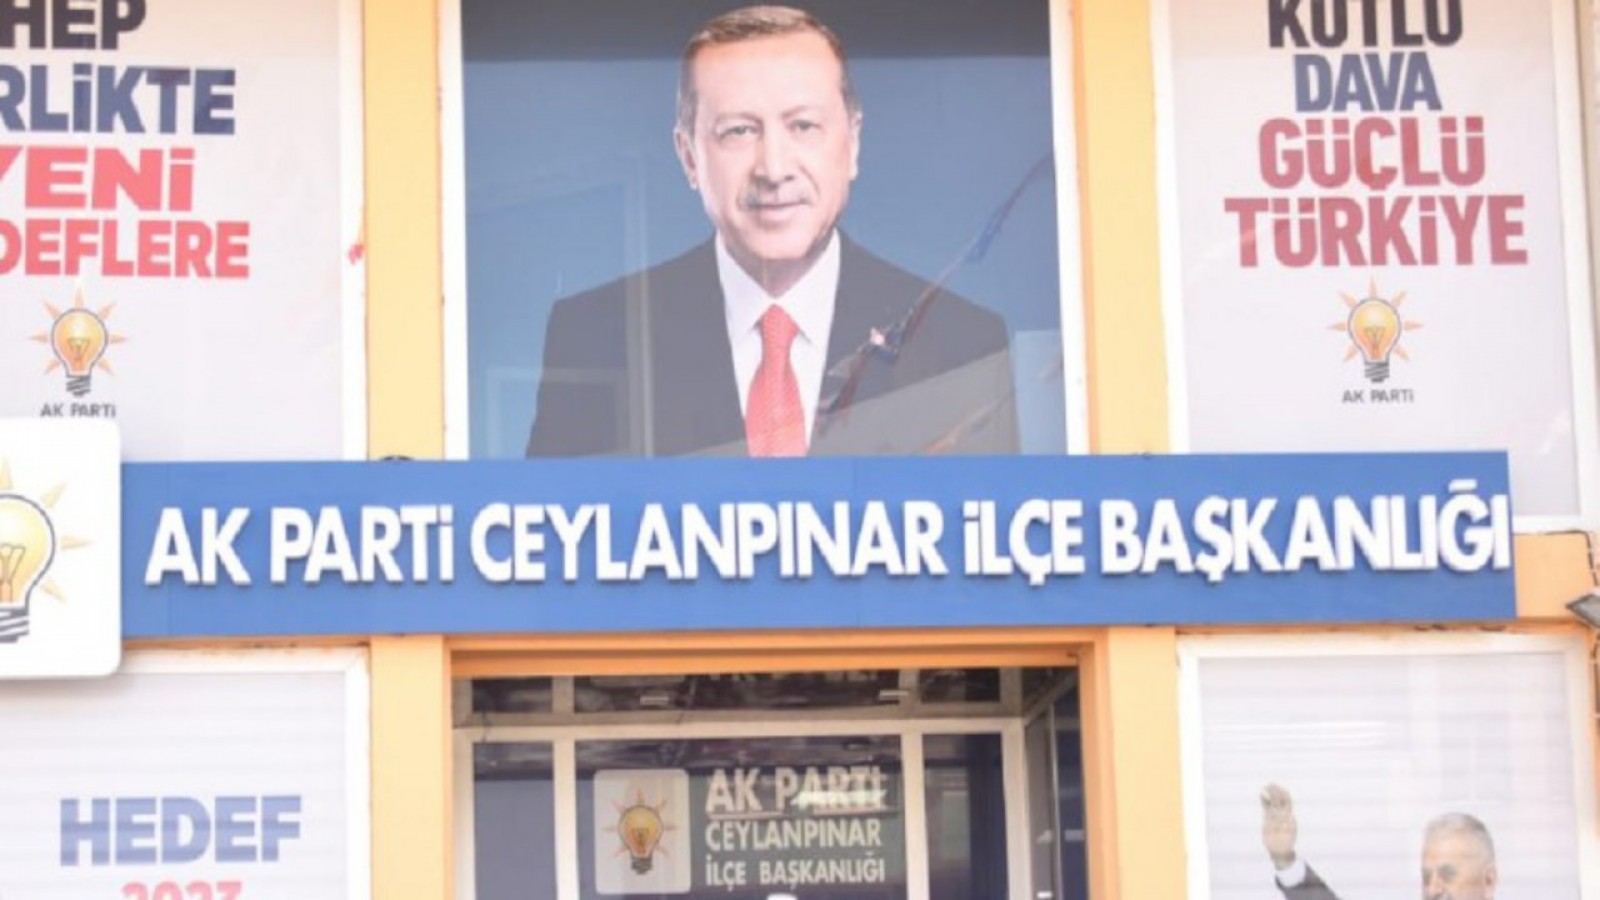 AK Parti Ceylanpınar İlçe Başkanlığı iddiaları sert dille yalanladı;